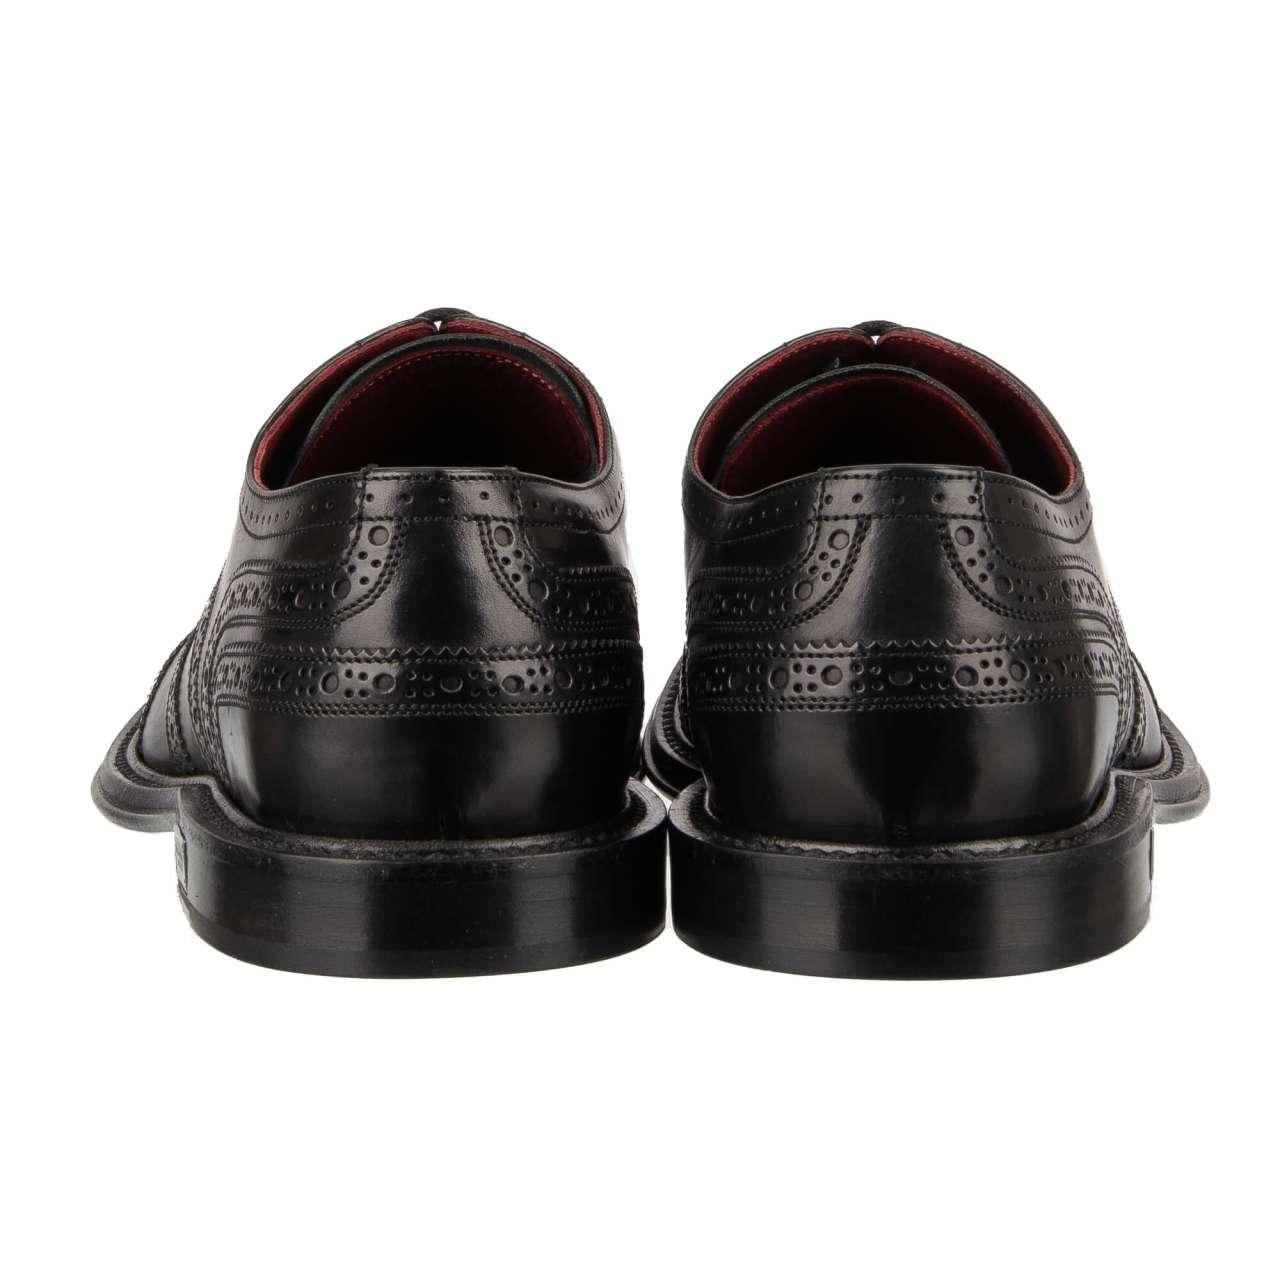 Dolce & Gabbana - DG Logo Formal Calf Leather Derby Shoes MARSALA Black EUR 44.5 For Sale 2